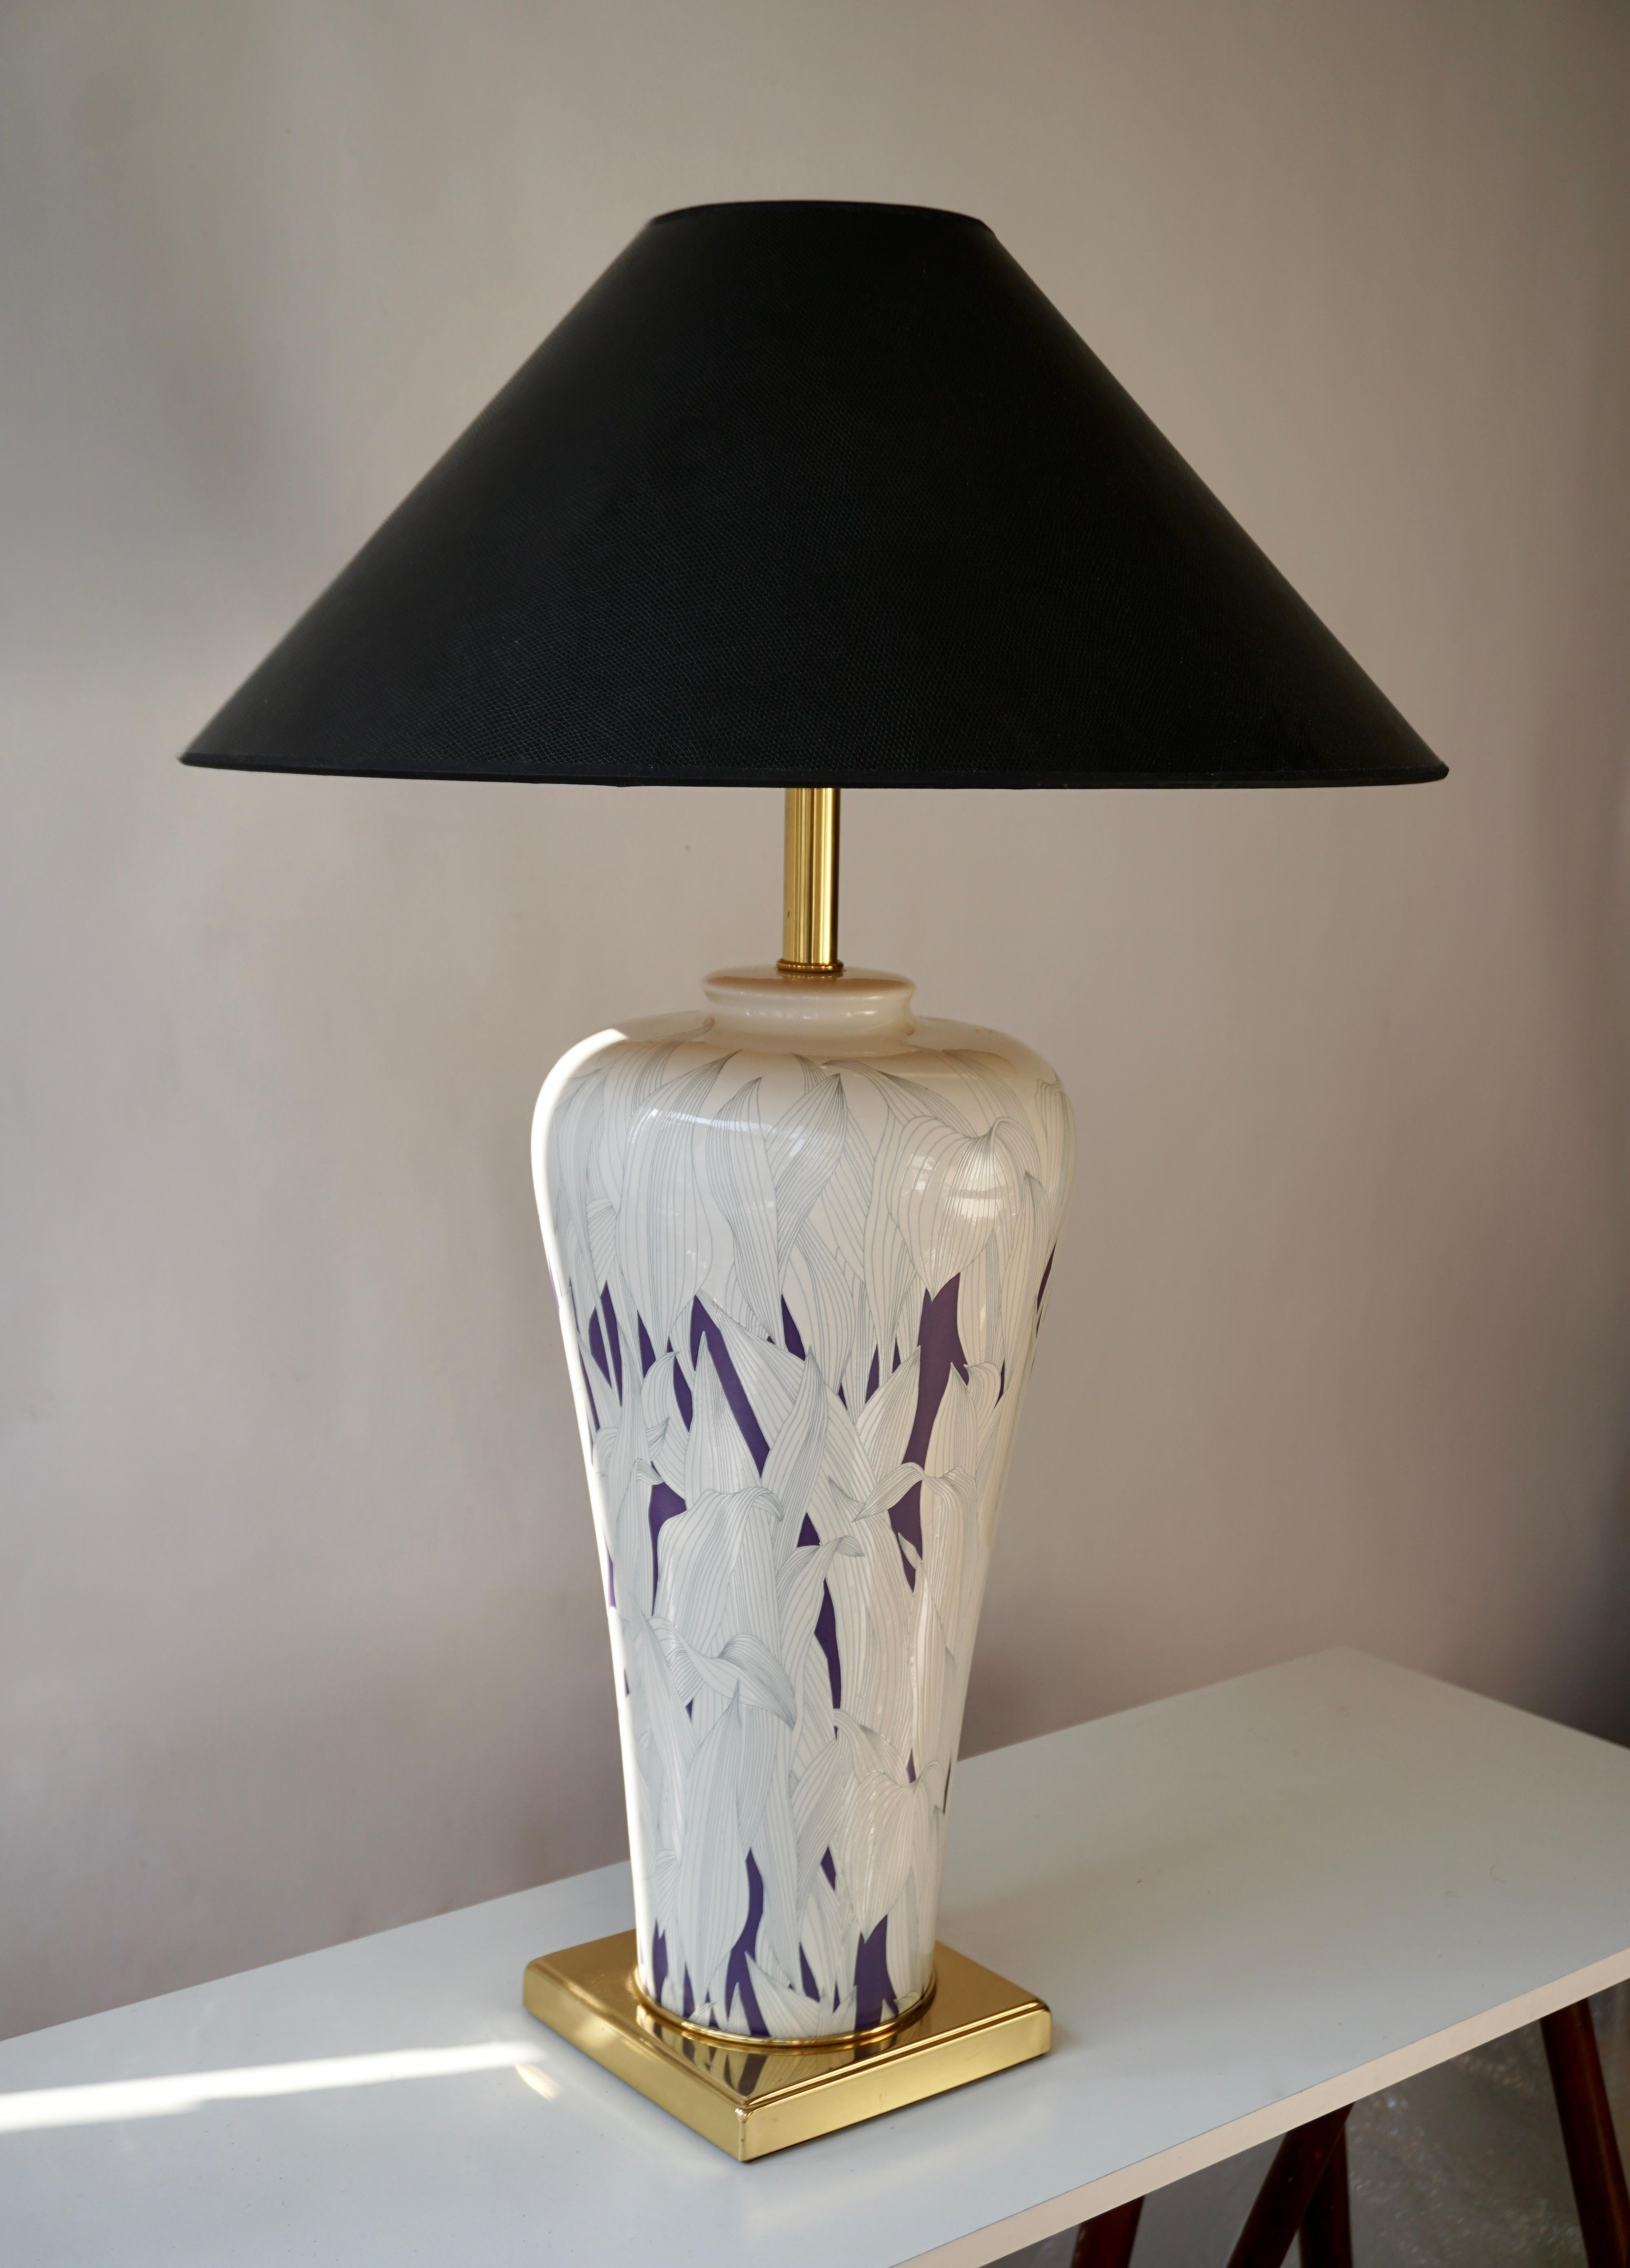 Grande lampe de table italienne en céramique et laiton violet et blanc.
Mesures : Hauteur 51 cm.
Diamètre 24 cm.
Poids 4 kg.

L'abat-jour n'est pas inclus dans le prix.